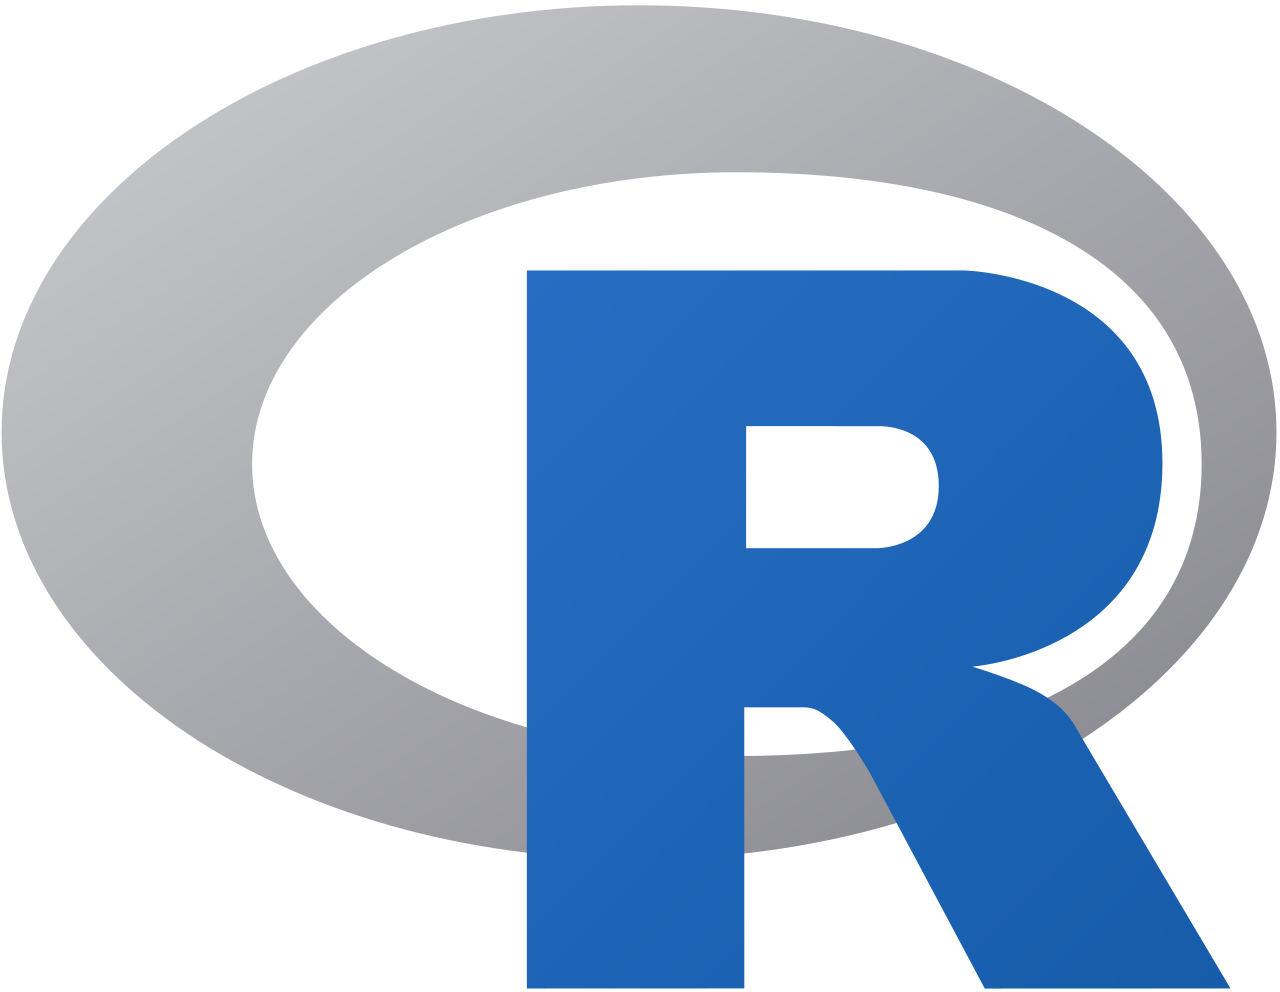 Logo of R programming language